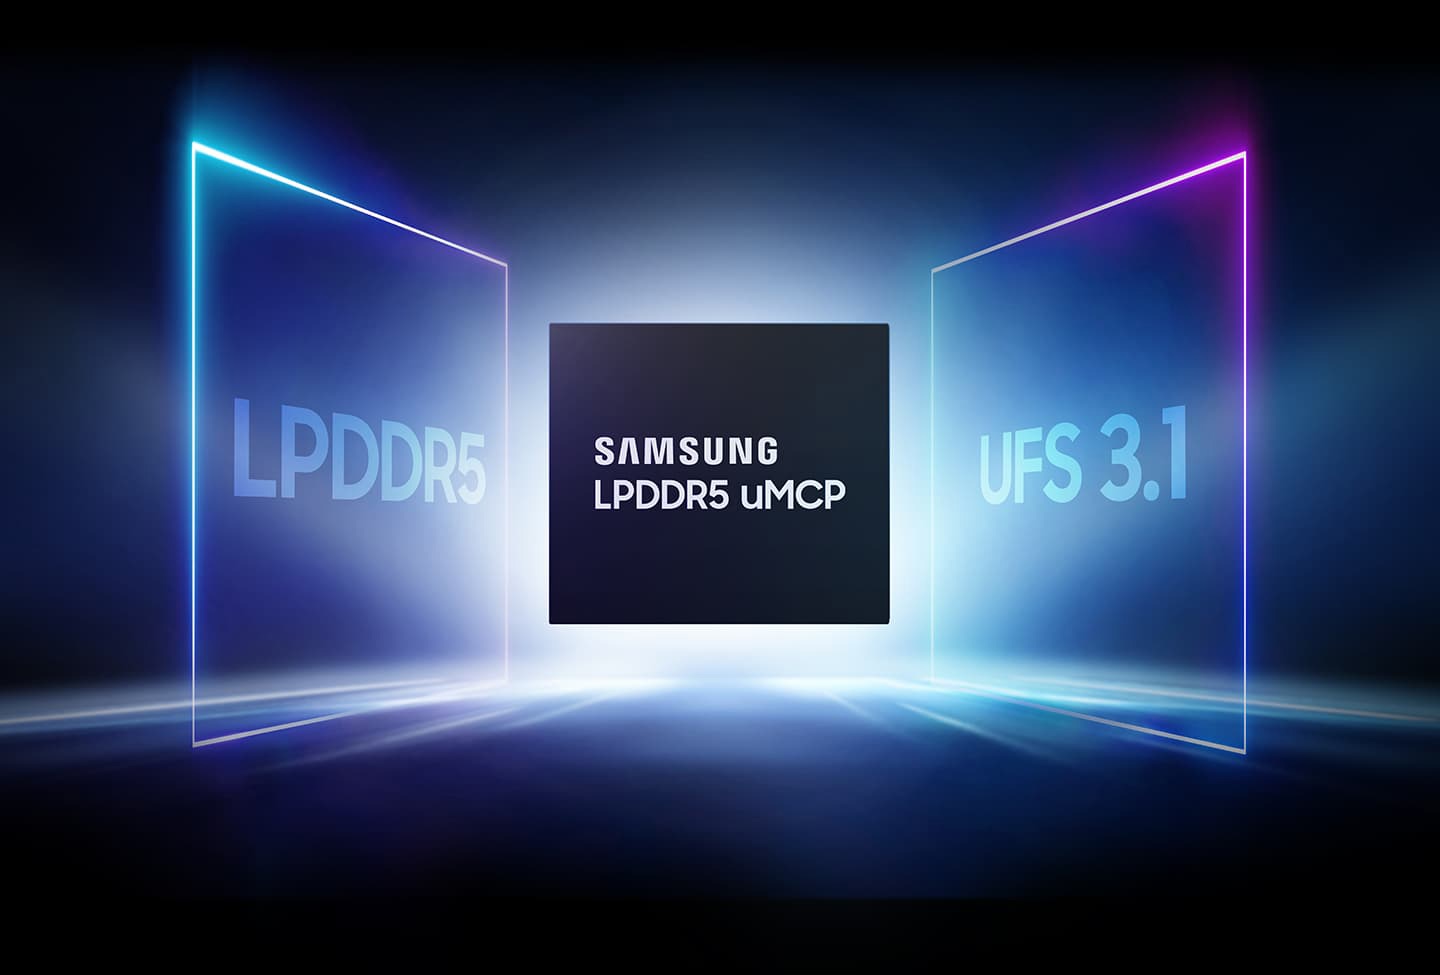 一张图片是SAMSUNG LPDDR5 uMCP产品居中，UFS 3.1和LPDDR5产品分两边。它是一个可视化图形，显示了 UFS 3.1 和 LPDDR5 组合的性能。